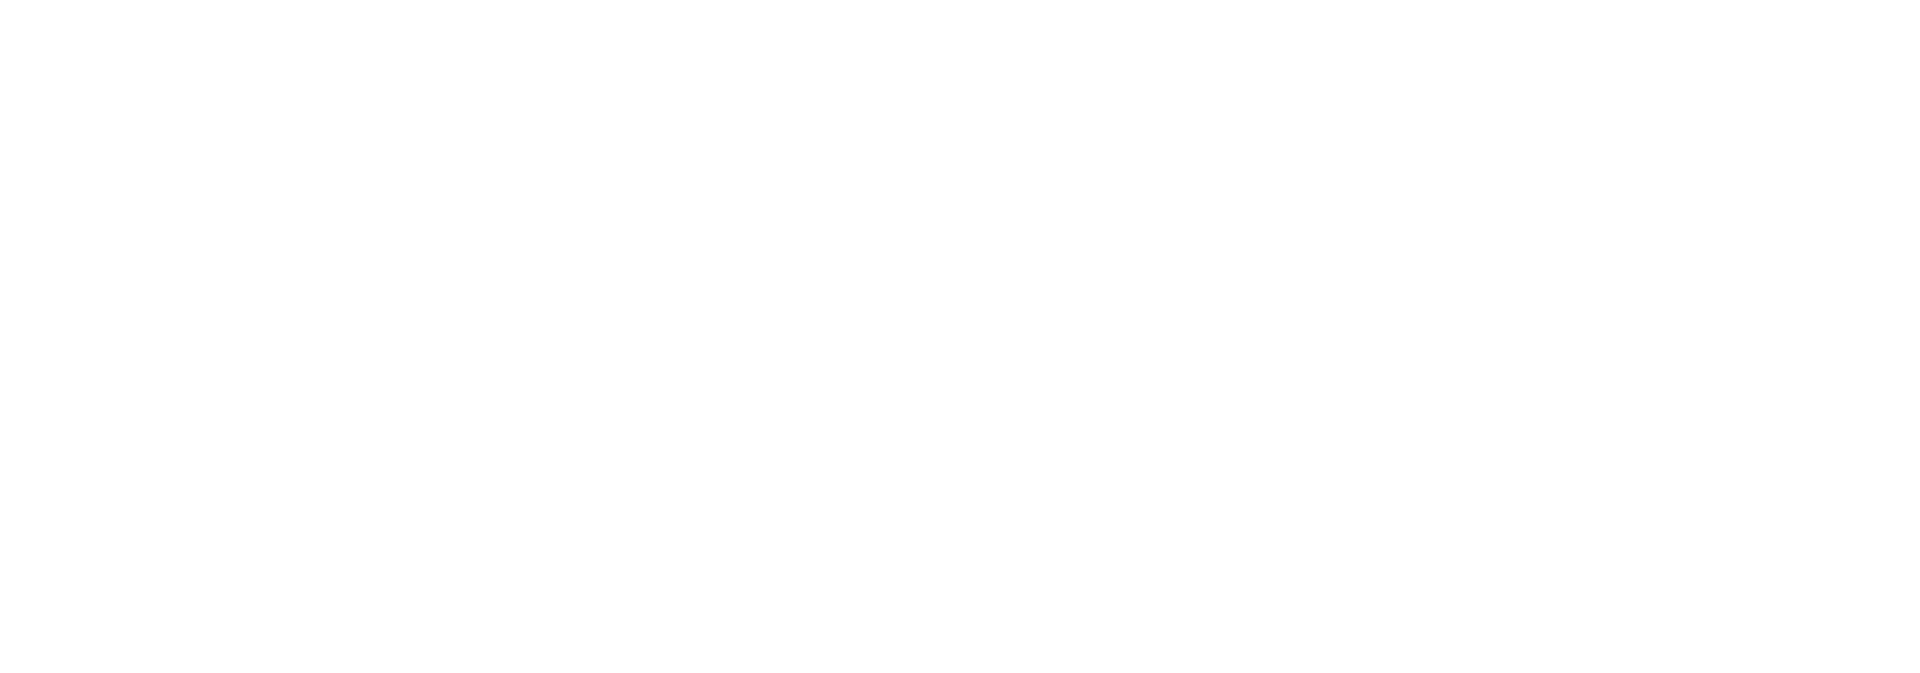 Culture Eve Asia Tour 2024